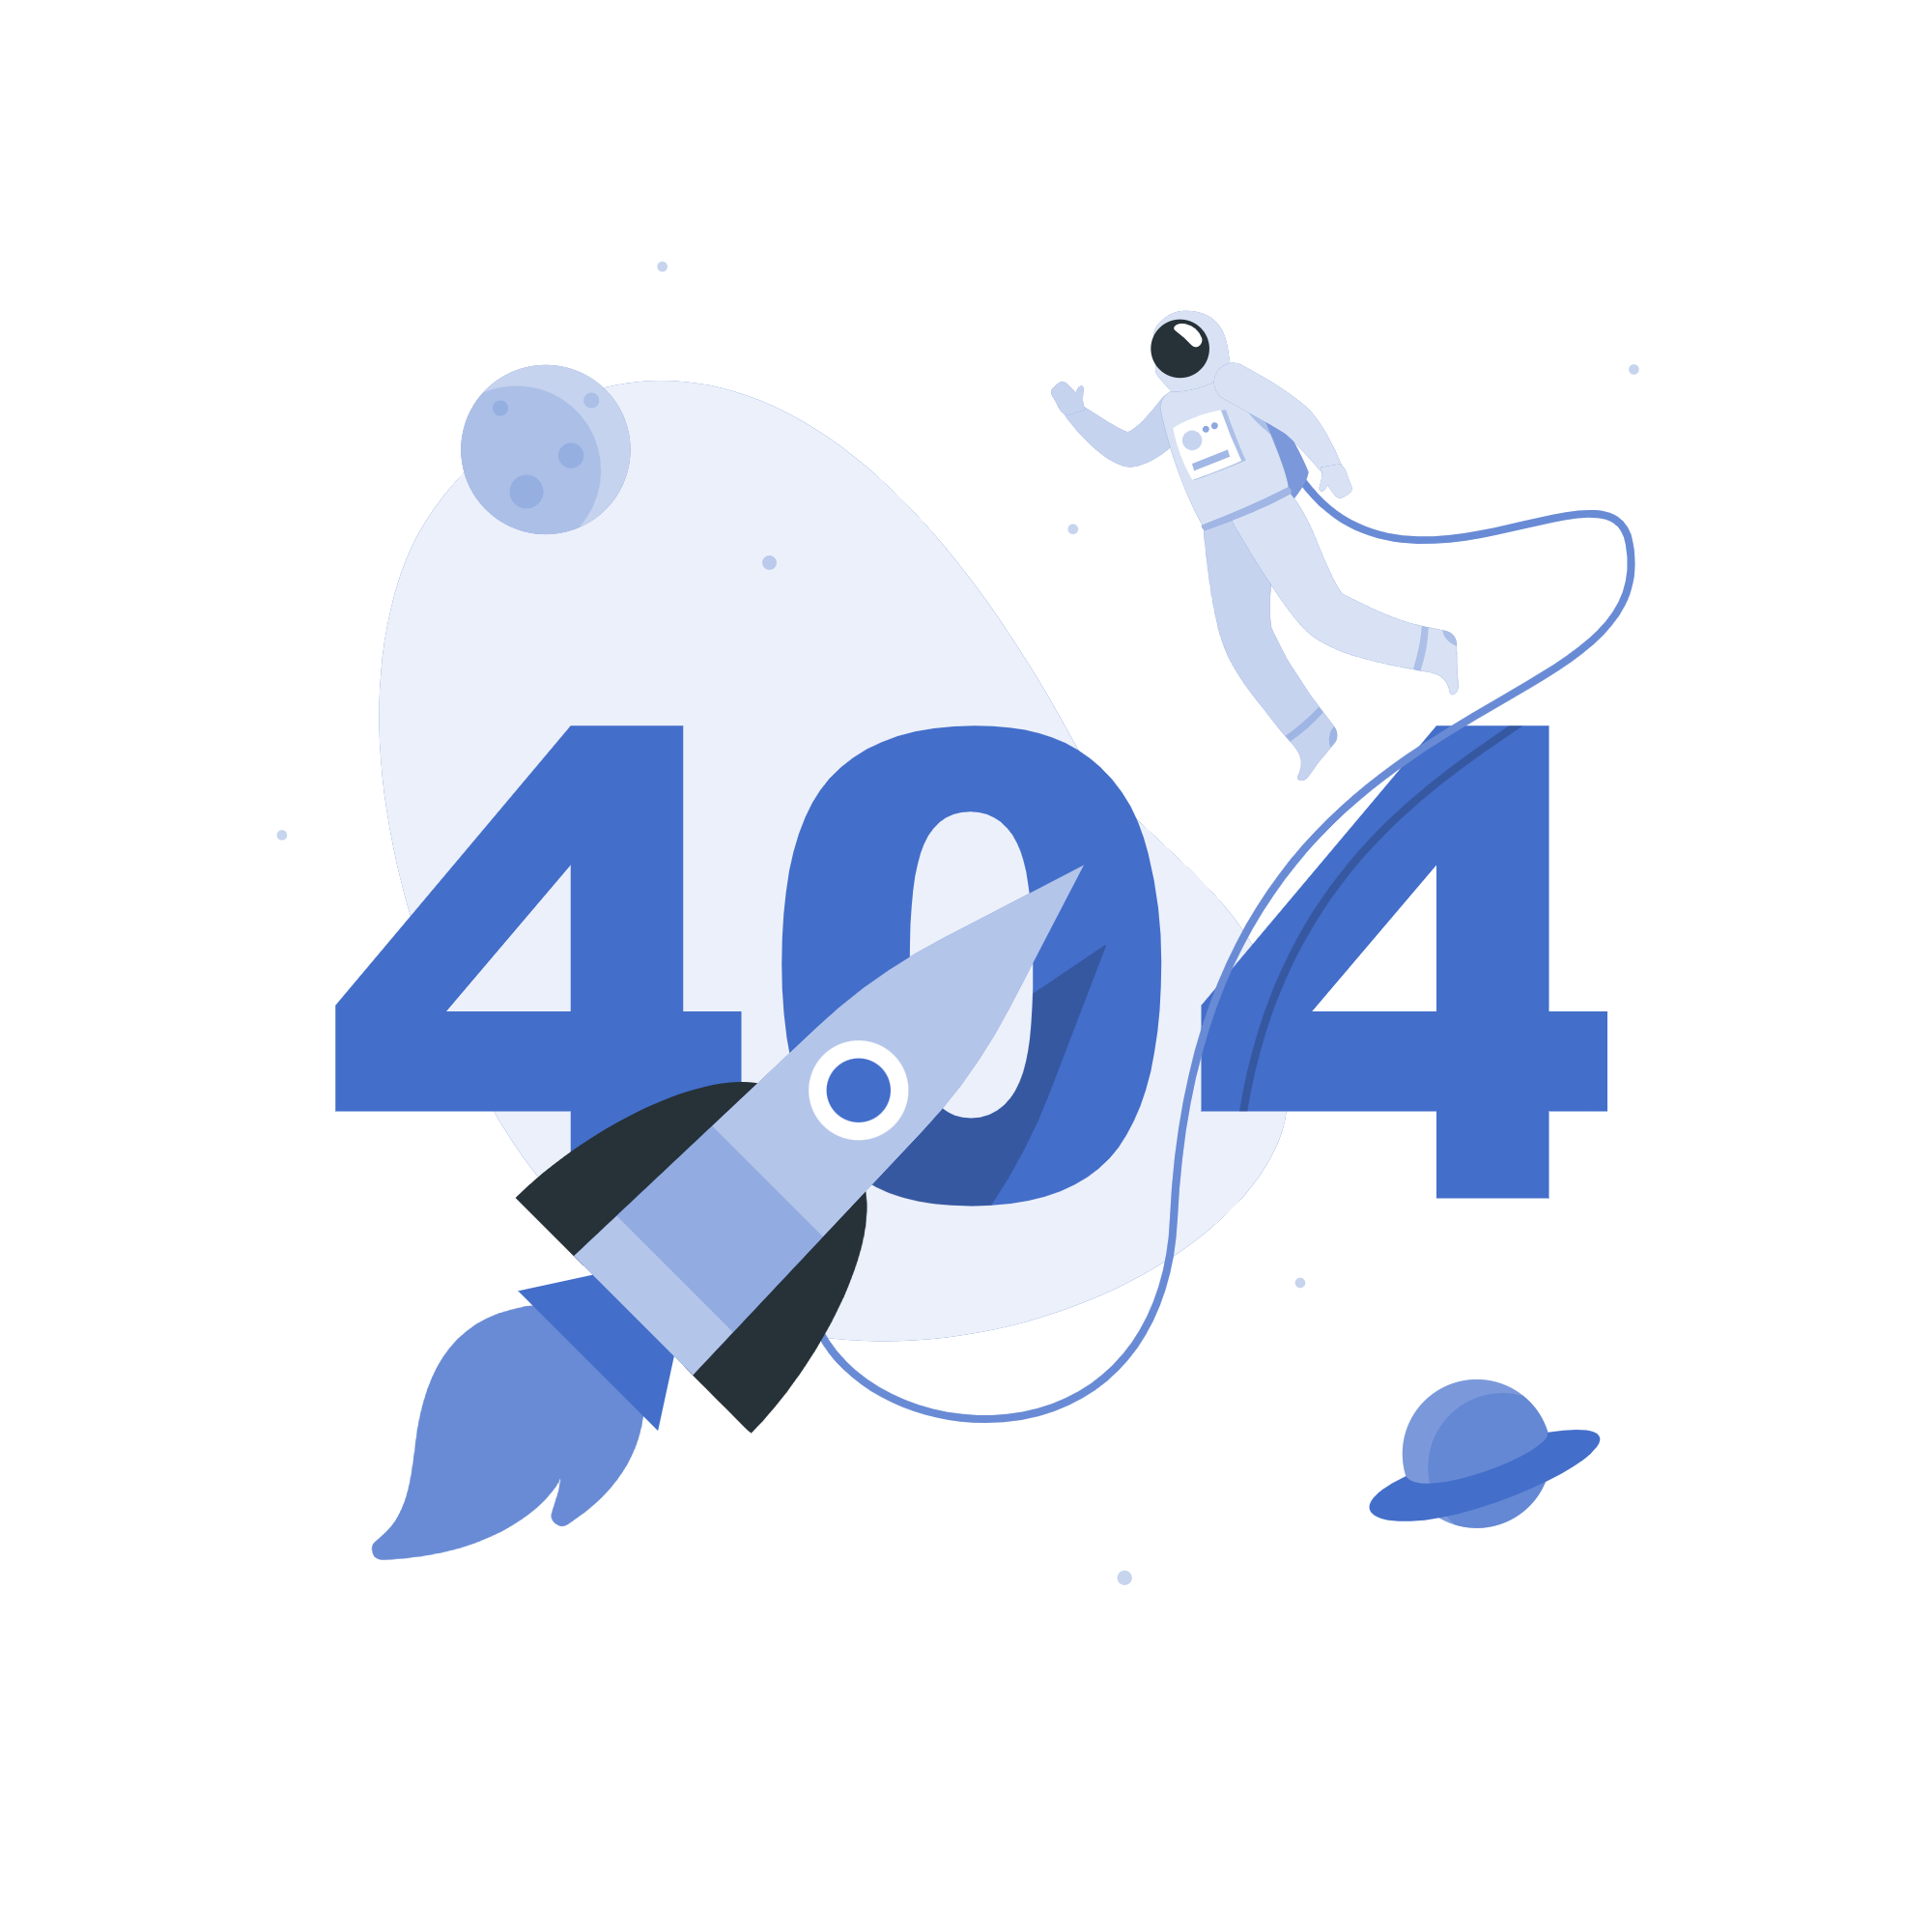 Erreur 404 : Image illustrant un message d&#039;erreur 404 pour une page non trouvée, avec un visuel explicatif pour orienter les utilisateurs confrontés à cette situation.